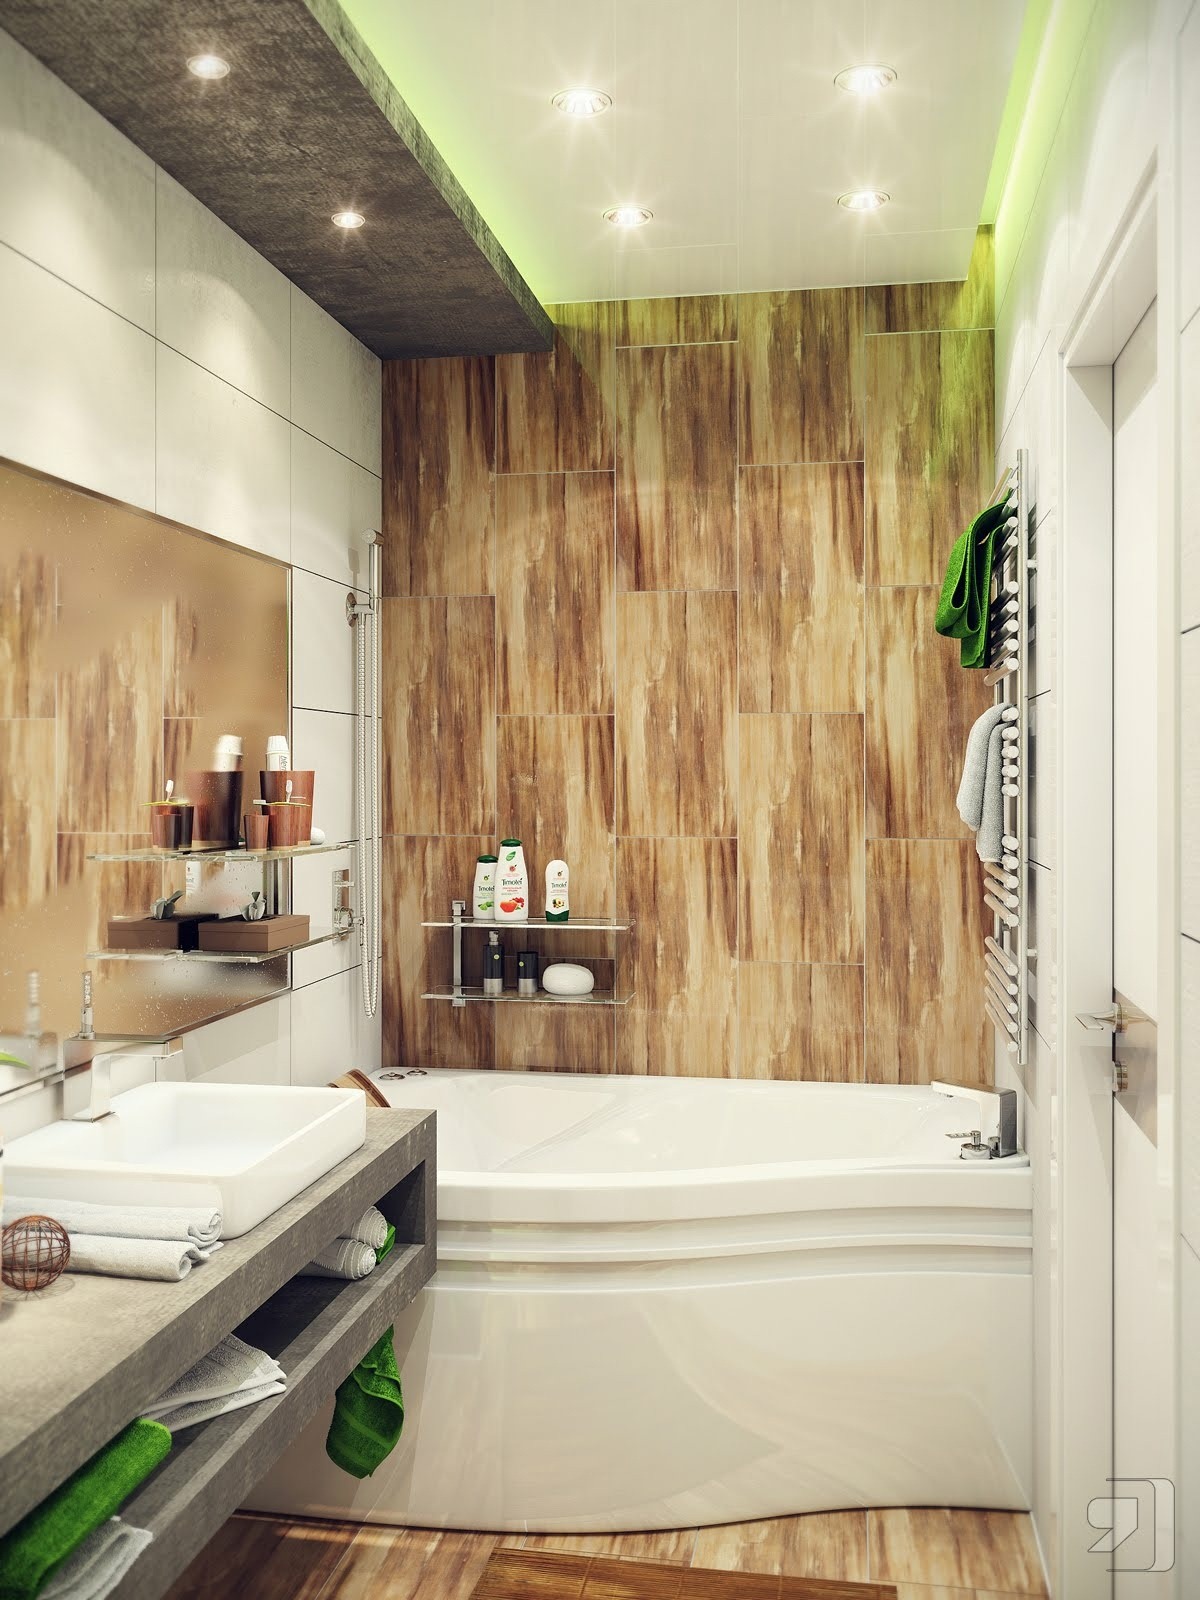 [Green-white-wood-bathroom5.jpg]